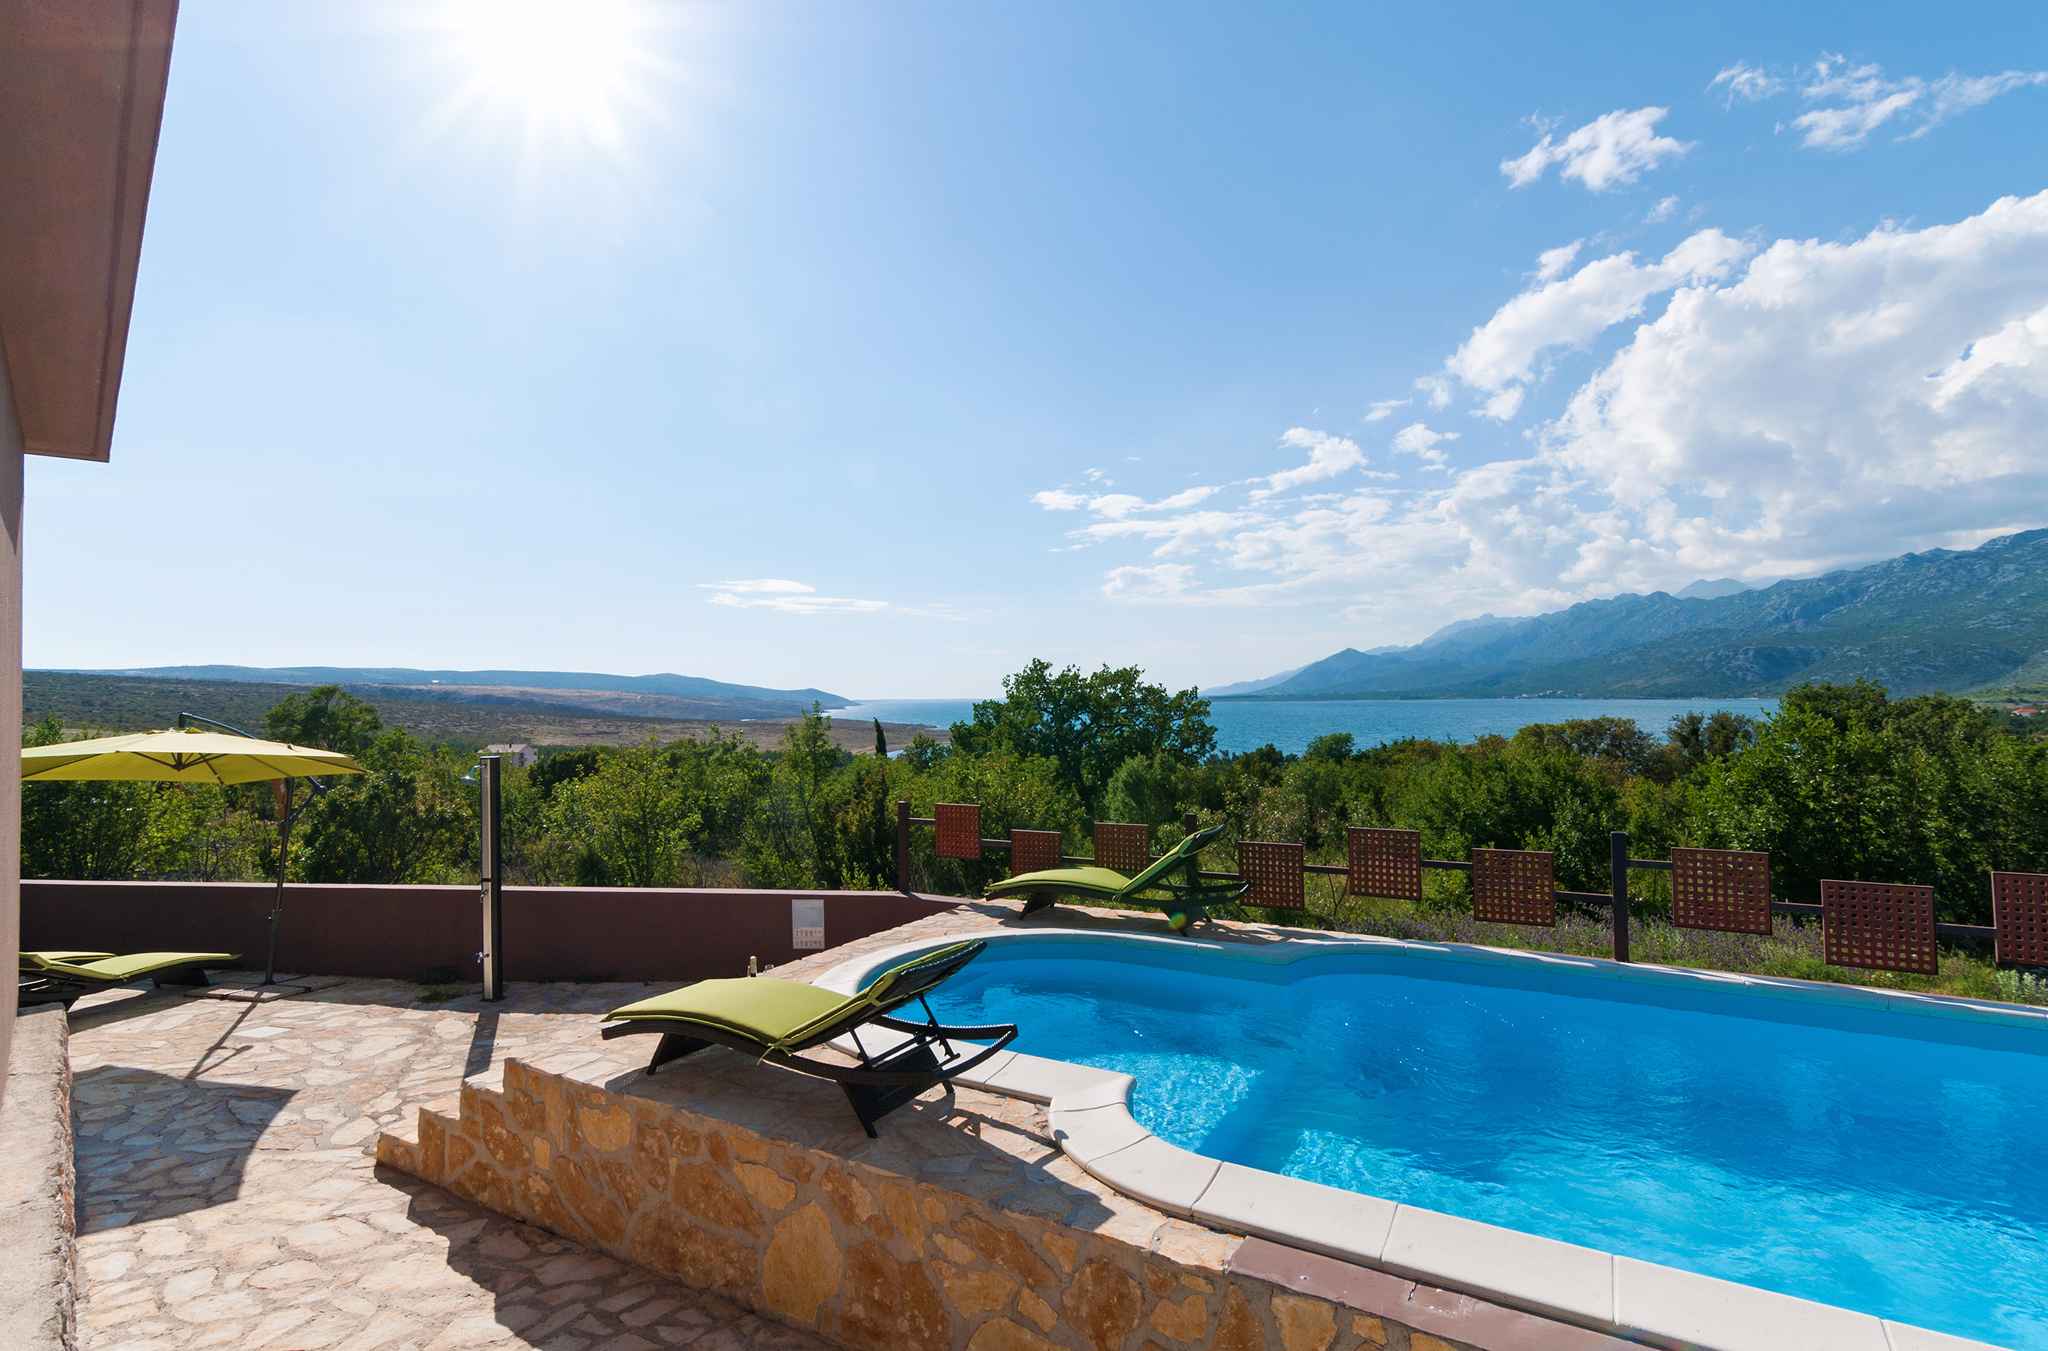 Ferienhaus für 8 Personen mit Pool und Meerbl Ferienhaus in Dalmatien